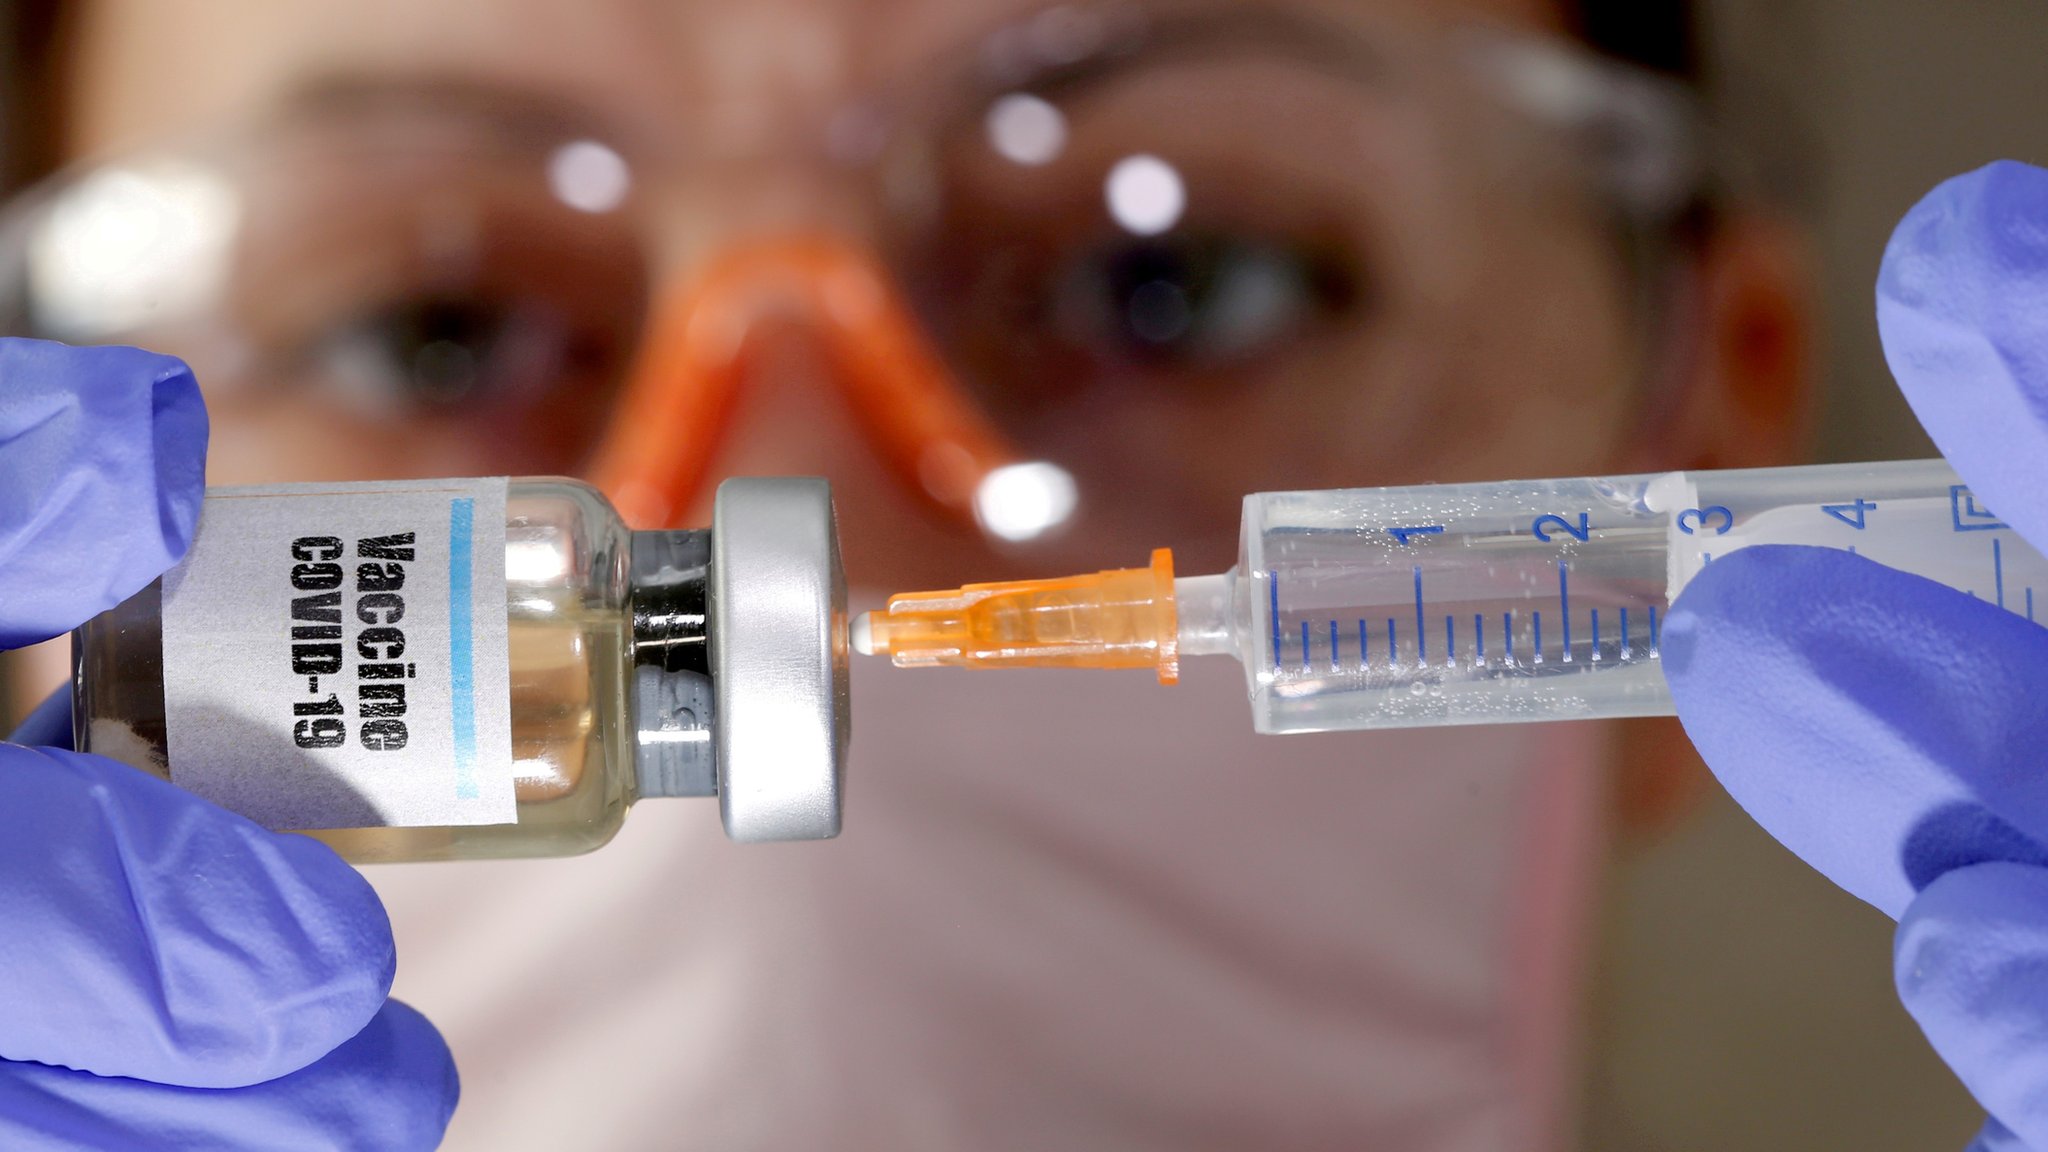 Коронавирус в мире: вакцина с эффективностью на 90% и студенческие волнения  в Компьене - BBC News Русская служба